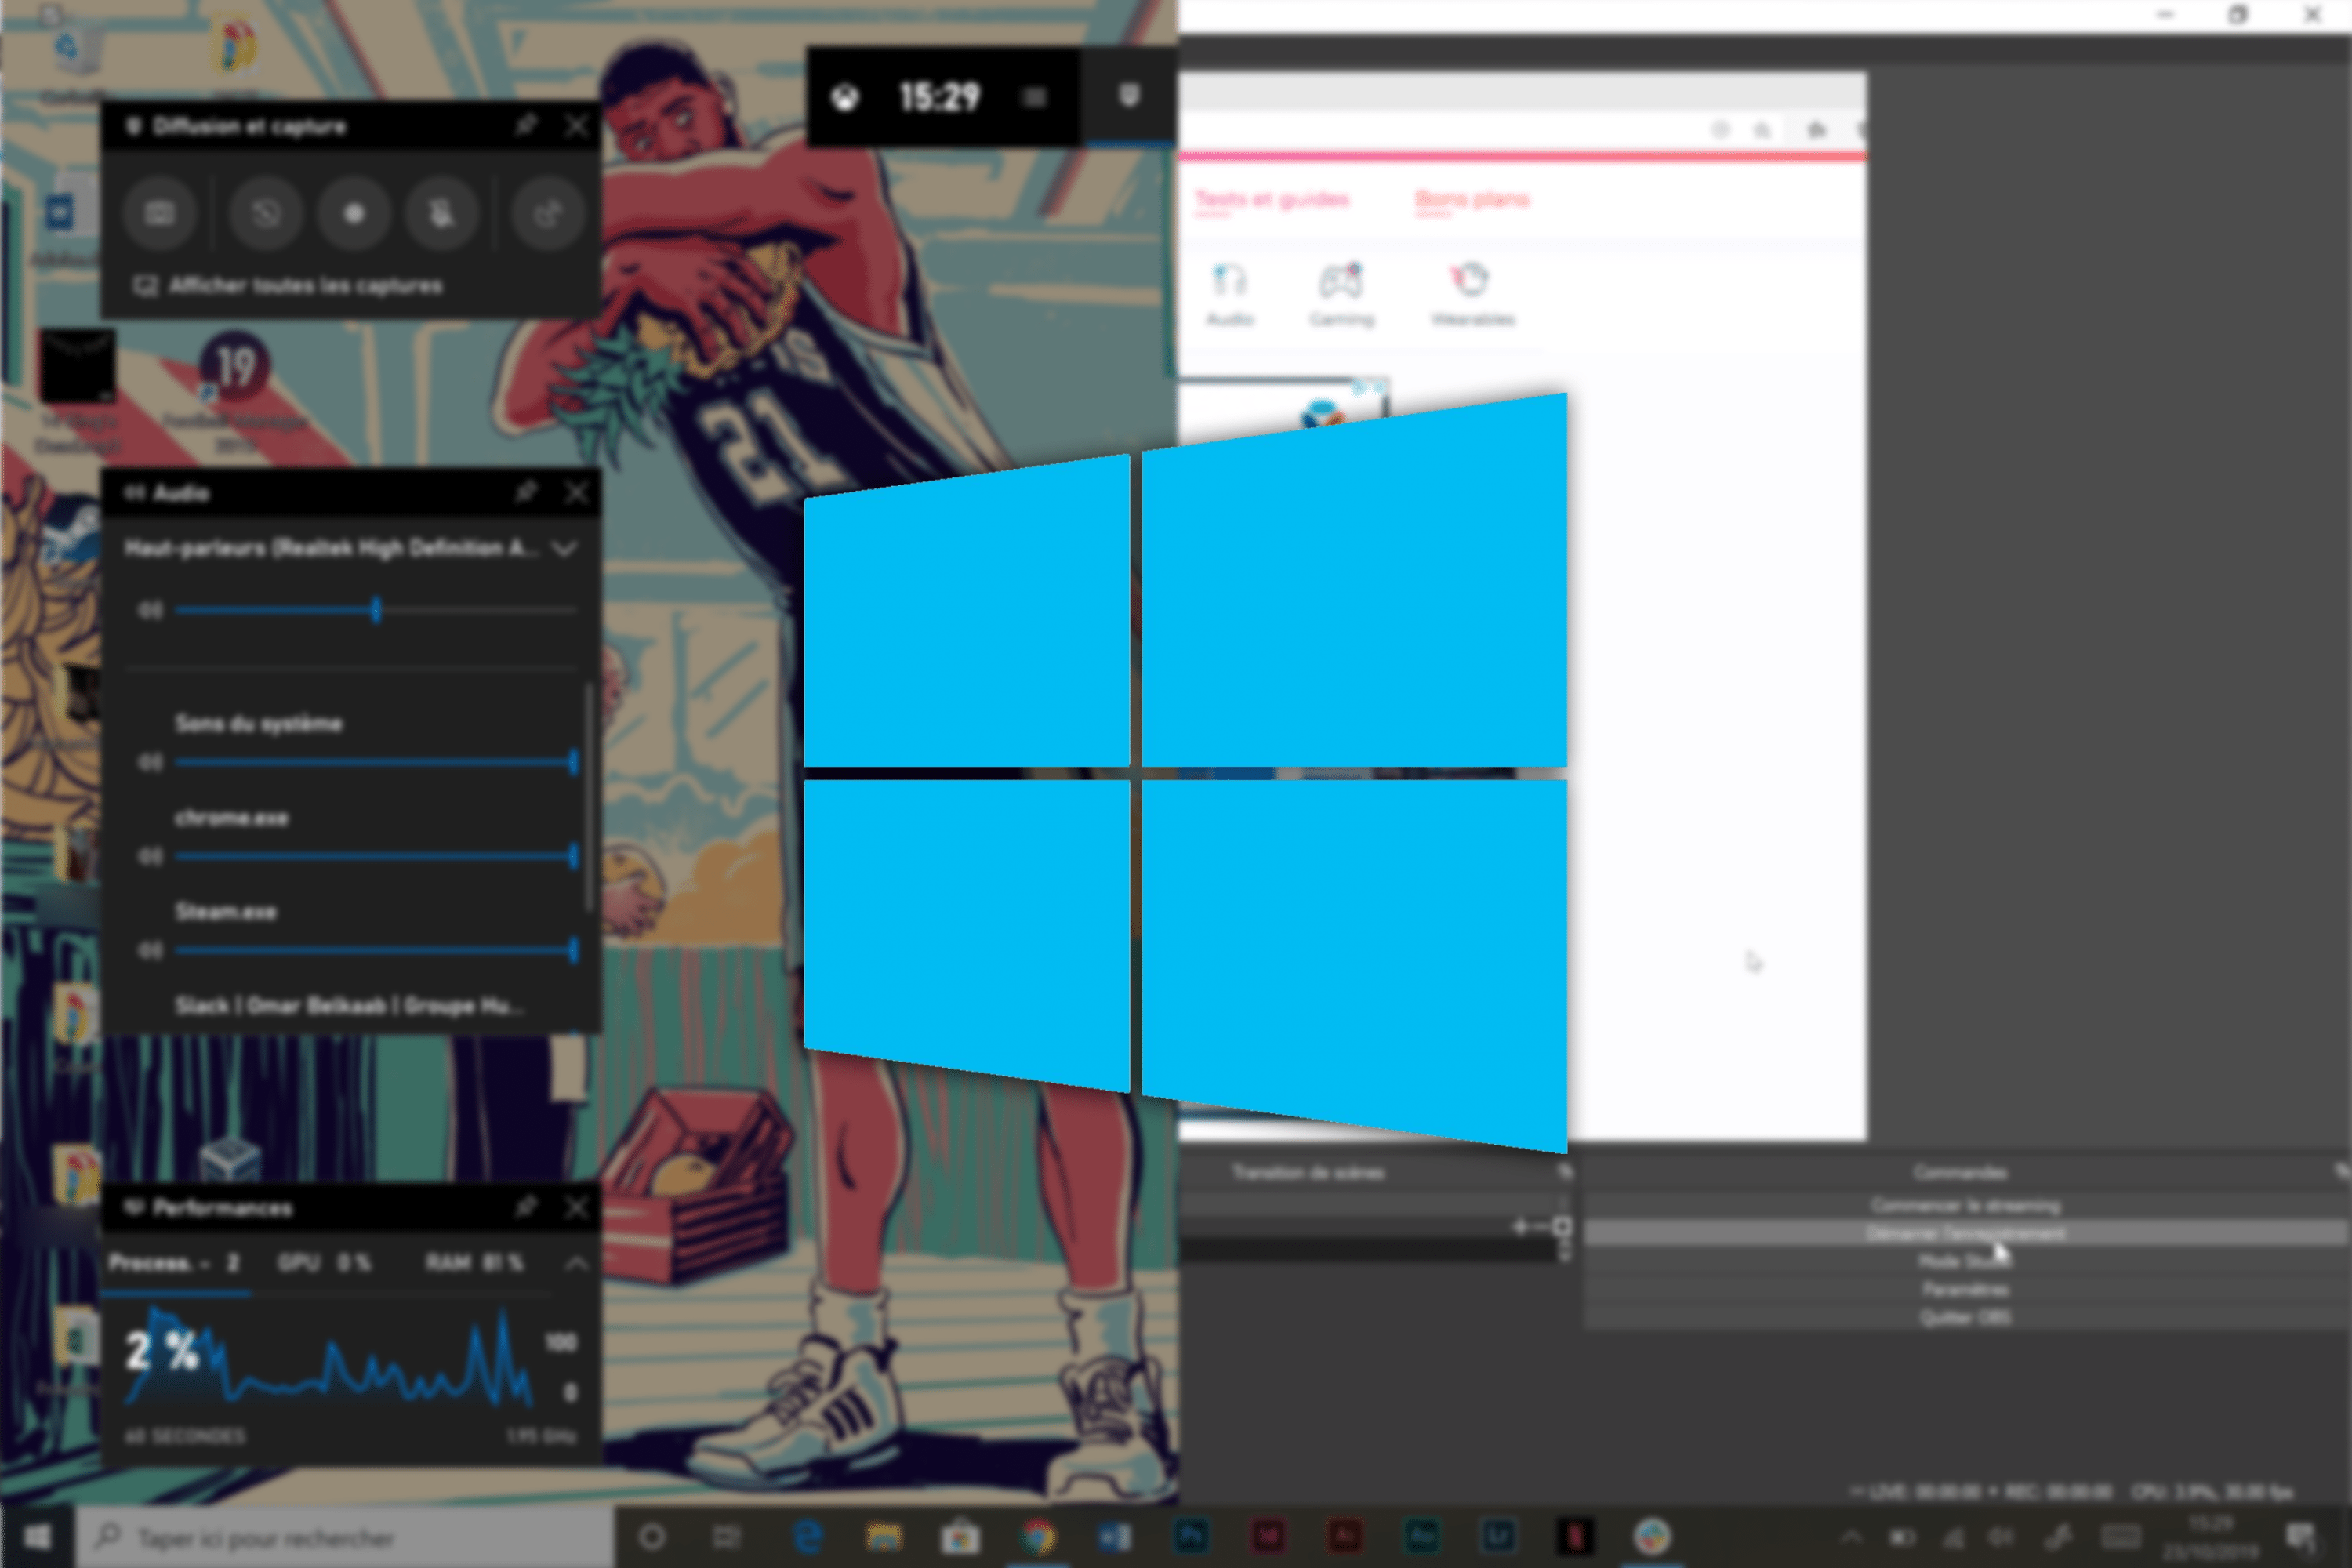 Comment Faire Une Capture Video Et Enregistrer Son Ecran Windows 10